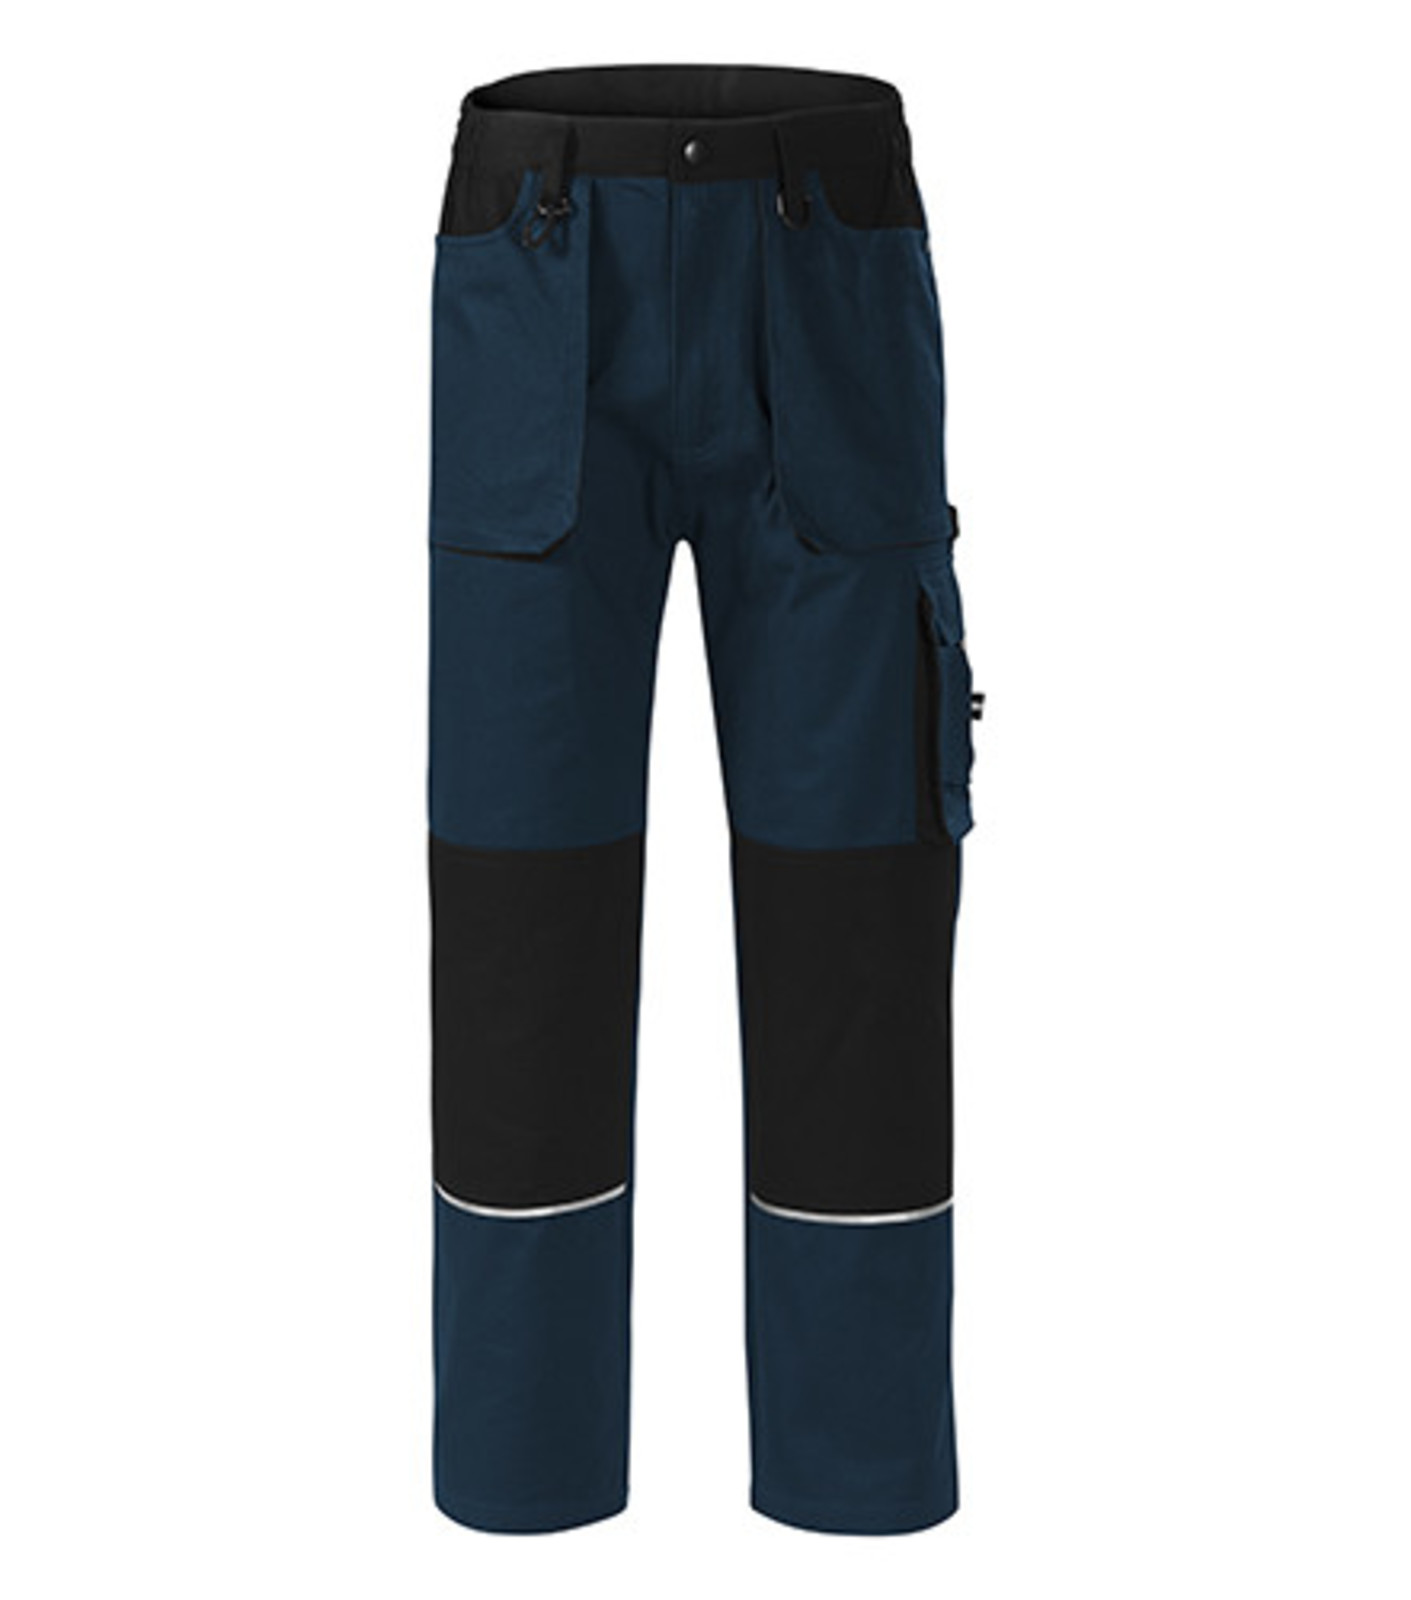 Montérkové nohavice Adler Woody W01 - veľkosť: 48-50, farba: tmavo modrá